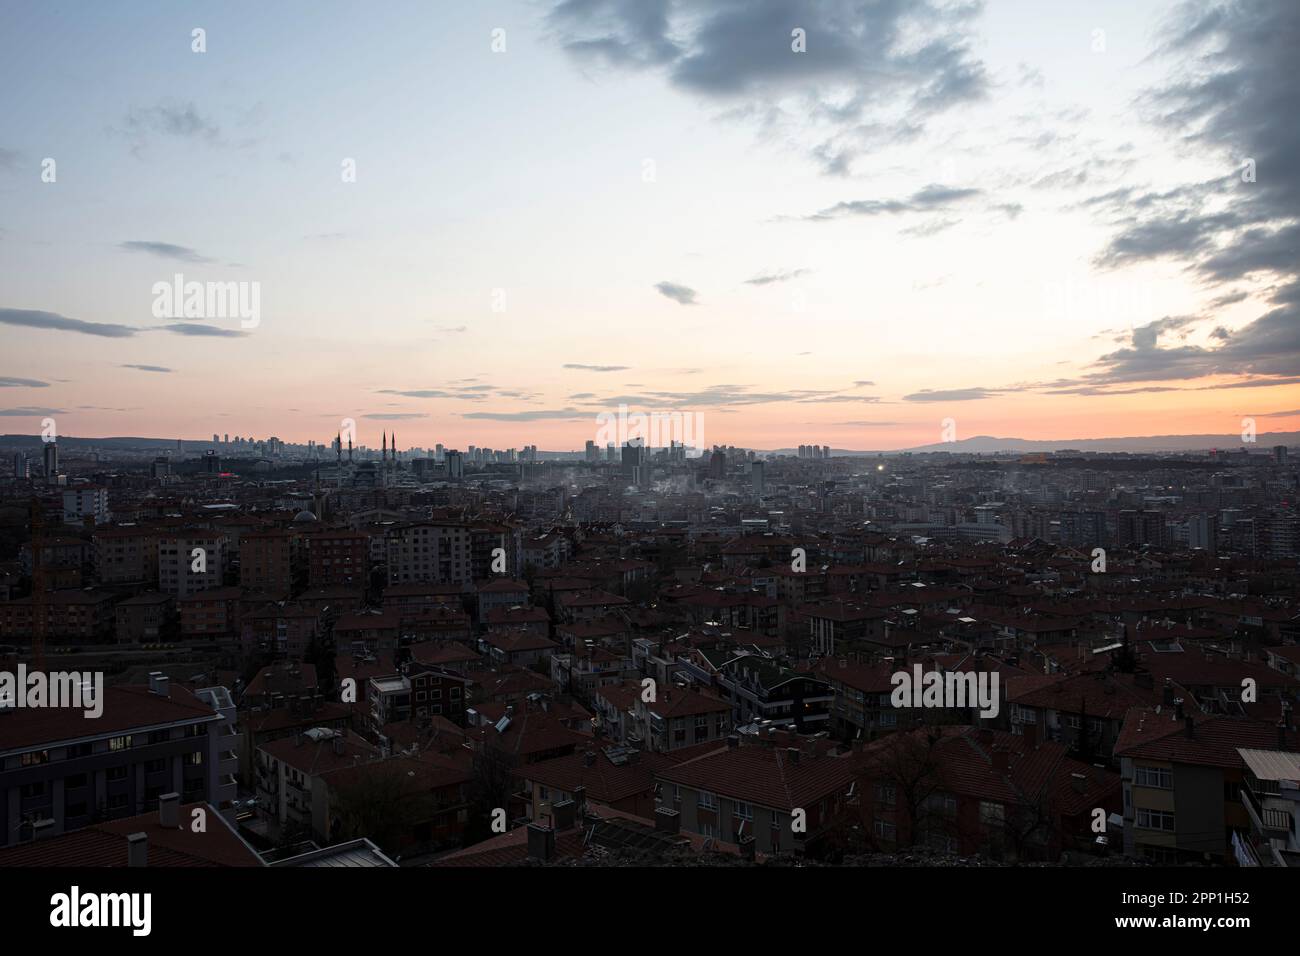 Panoramablick auf die Innenstadt der Stadt Ankara, Türkei mit Gebäuden und Moscheen, die an einem Tag bei Sonnenuntergang von der Burg Ankara (Ankara Kalesi) aus zu sehen sind. Stockfoto